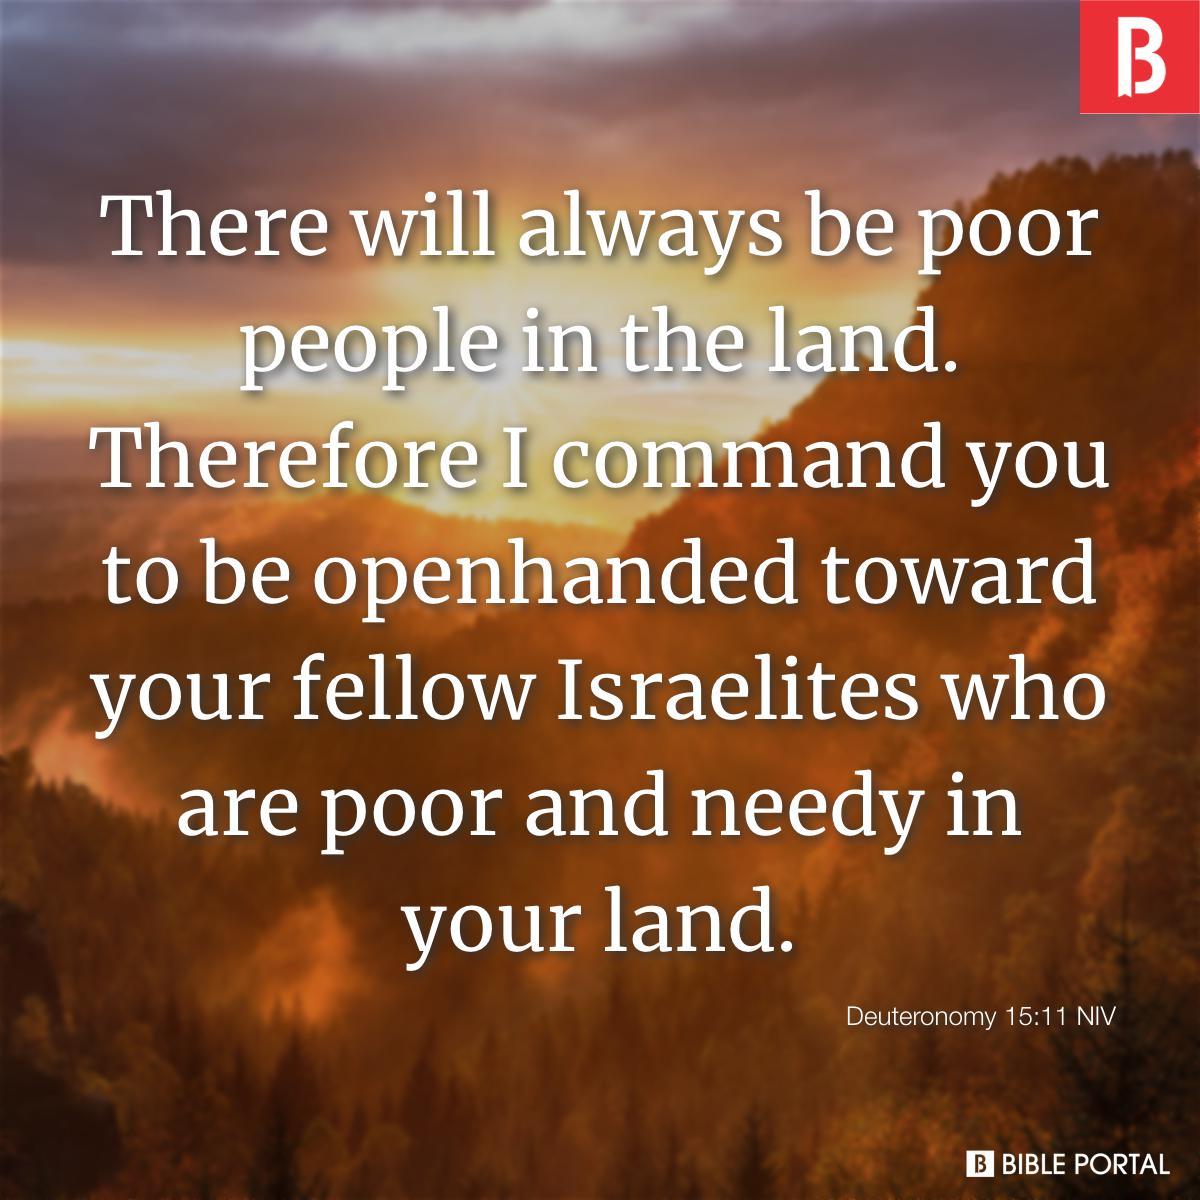 Deuteronomy 15:11 NIV